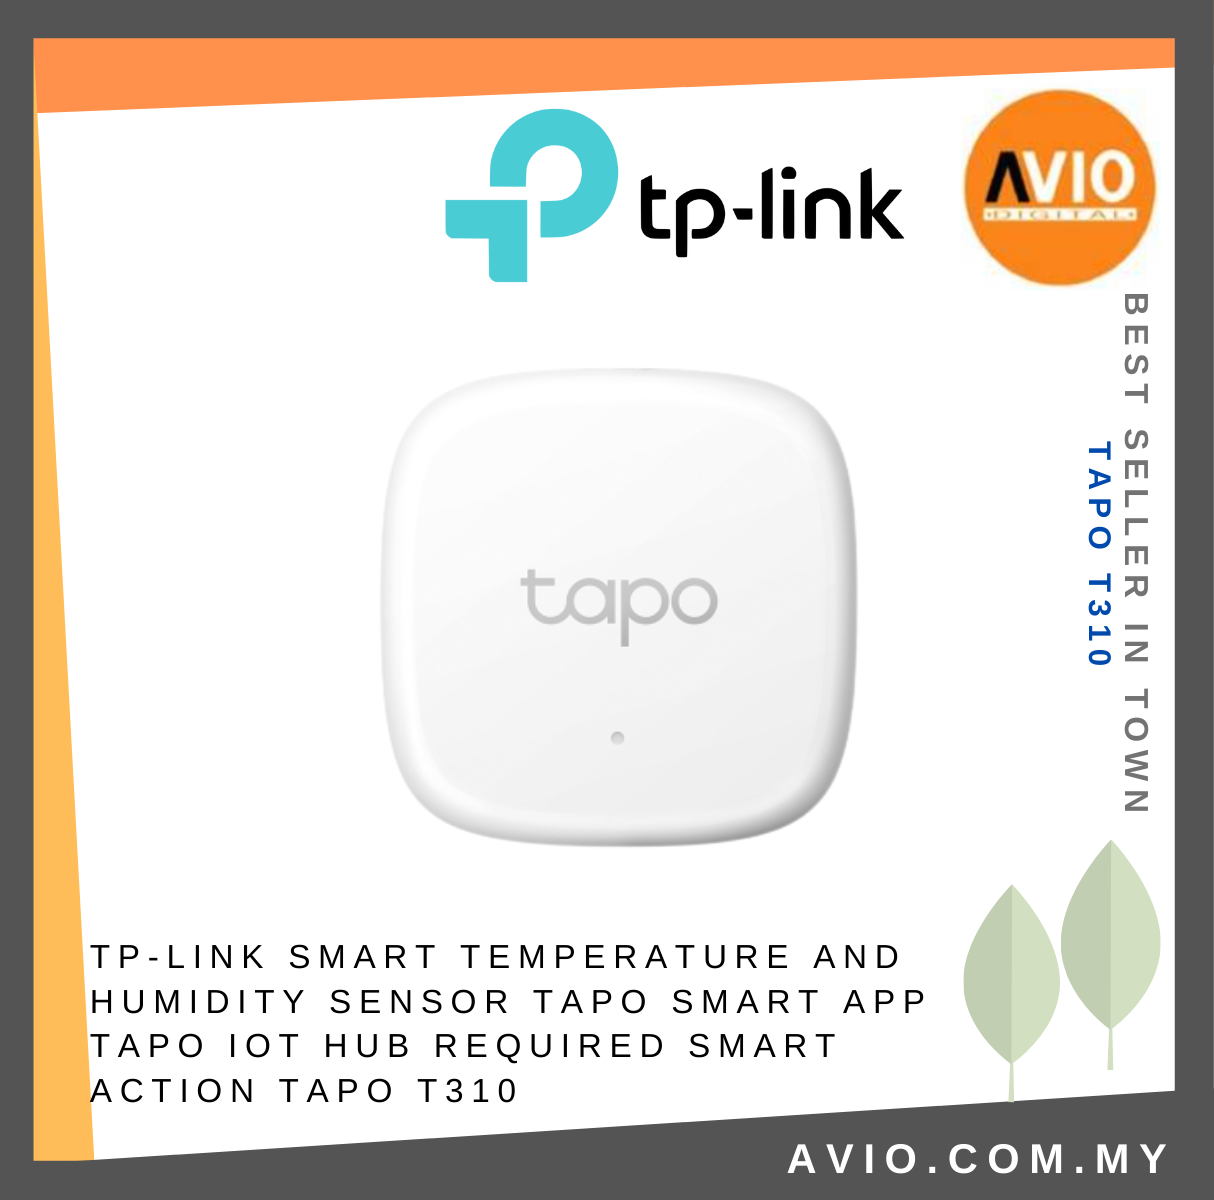 TP-LINK Tplink Smart Home Temperature and Humidity Sensor Smart